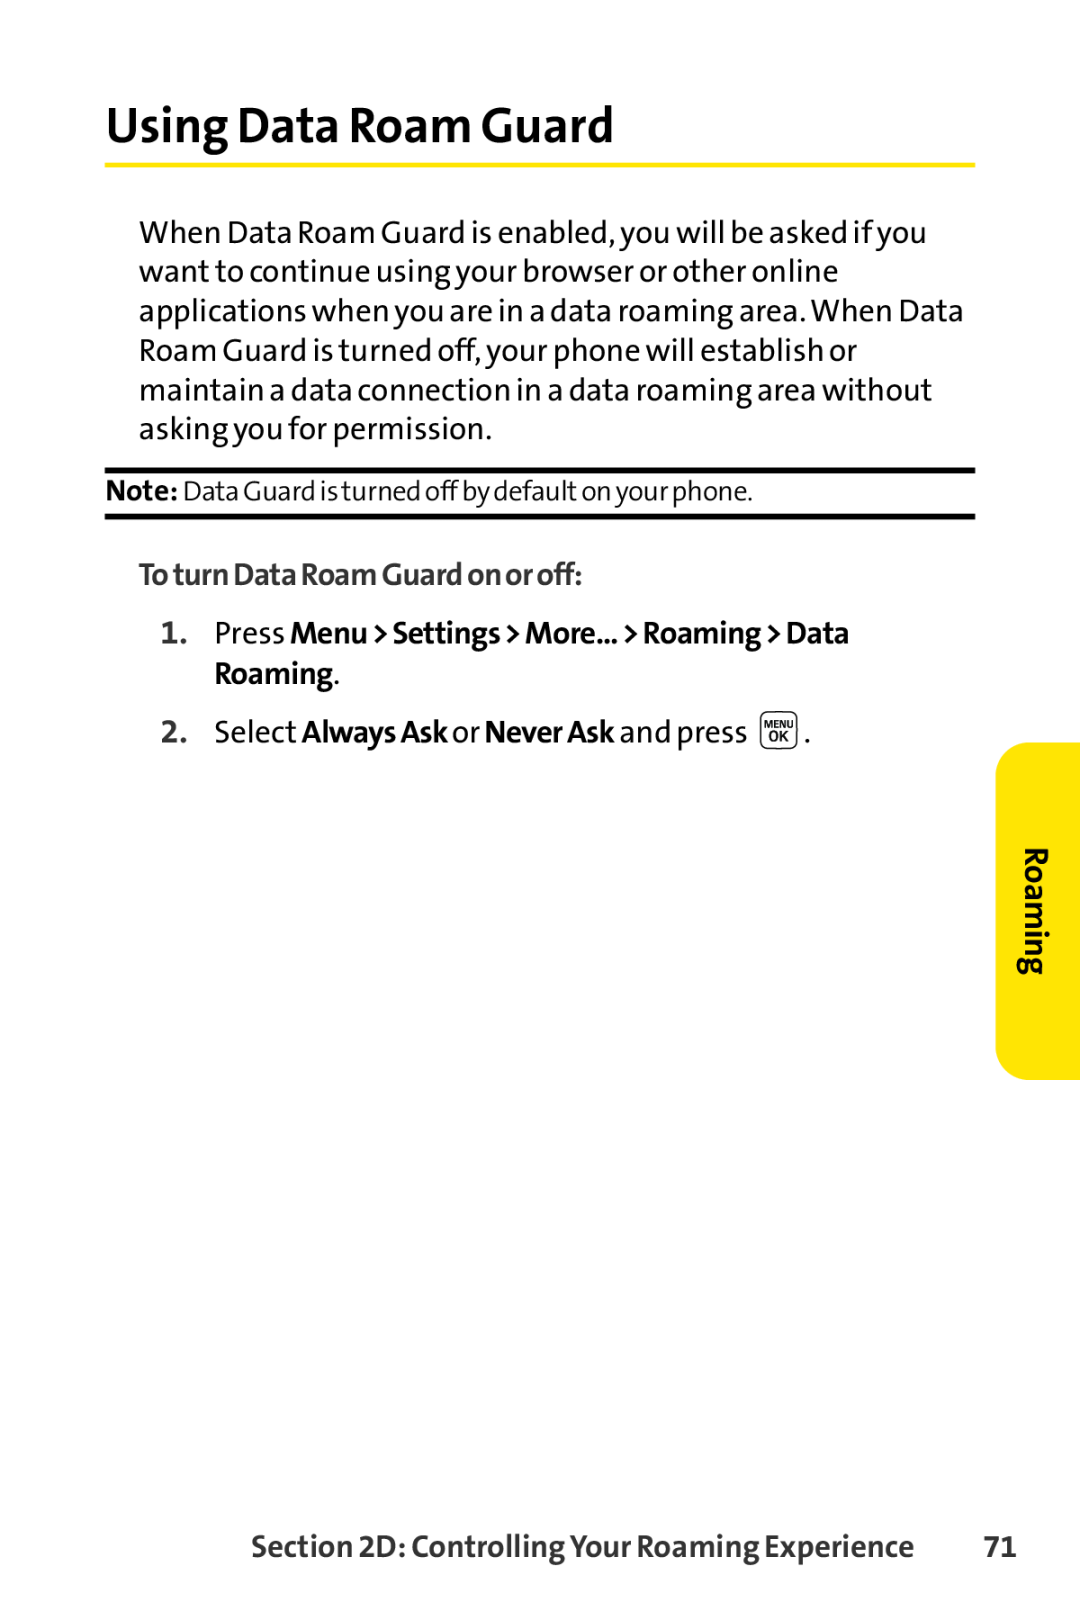 Sprint Nextel LX160 manual Using Data Roam Guard, ToturnDataRoamGuardonoroff, Roaming 